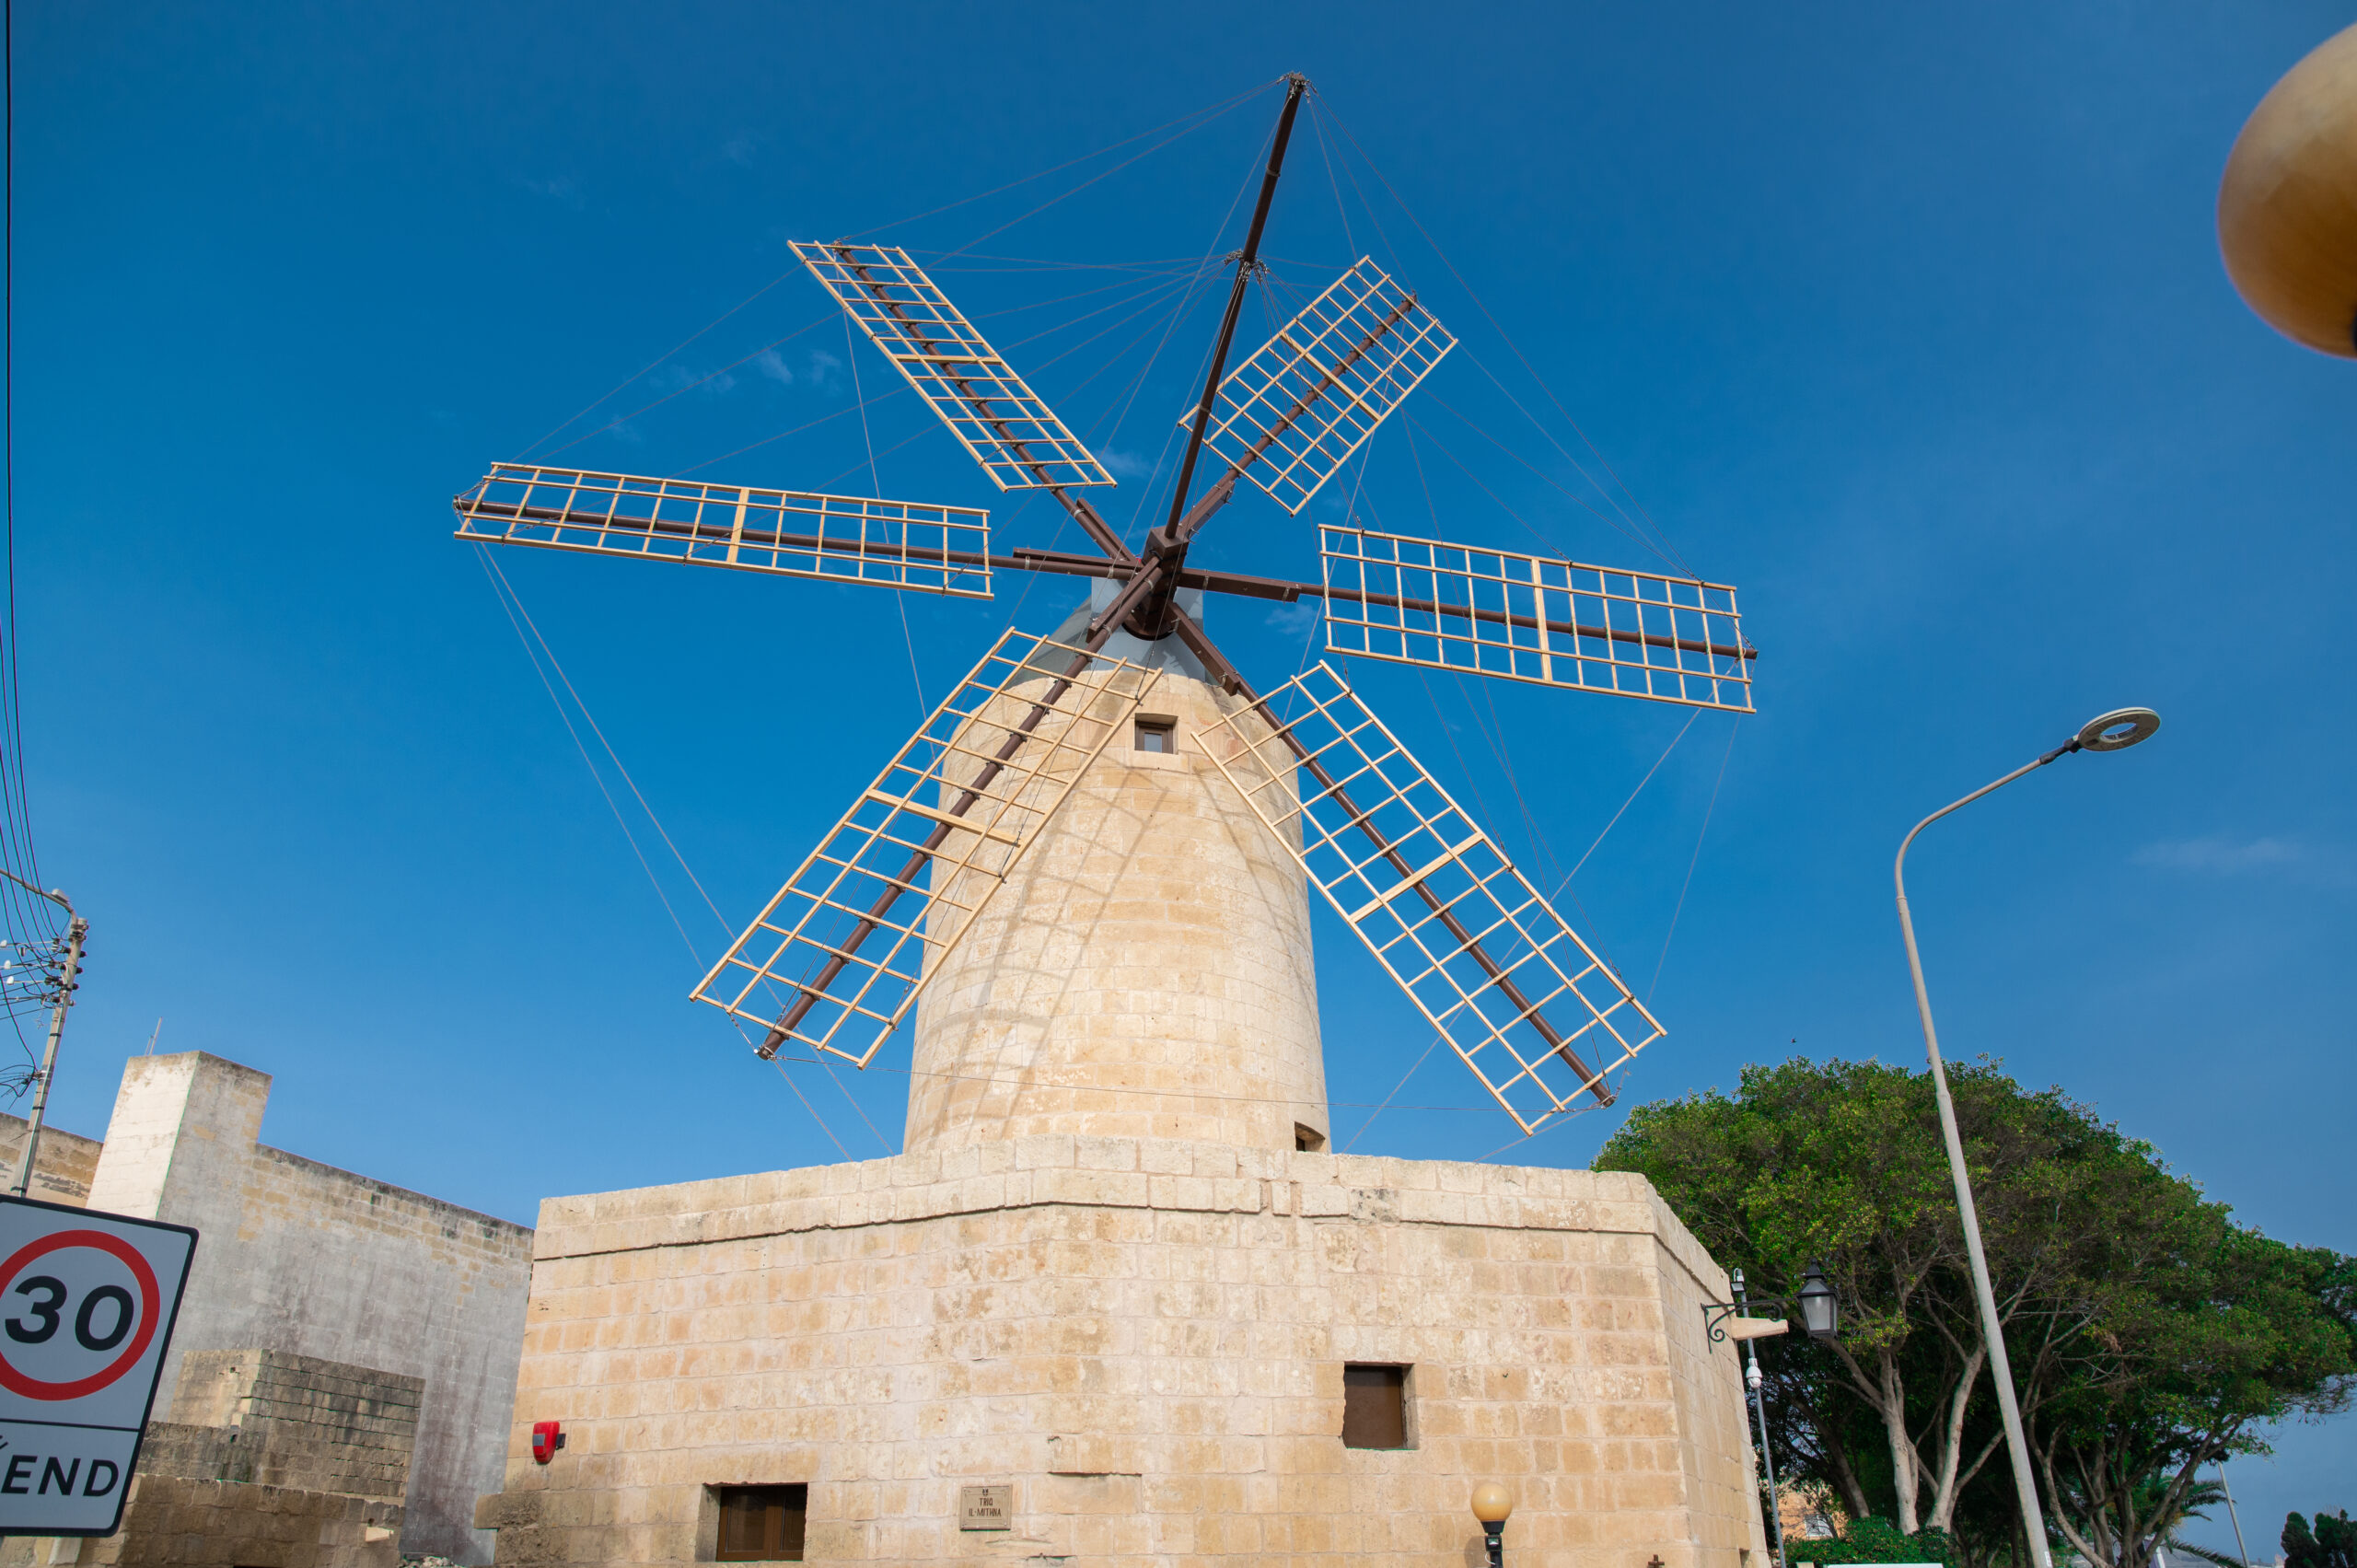 Xewkija Windmill